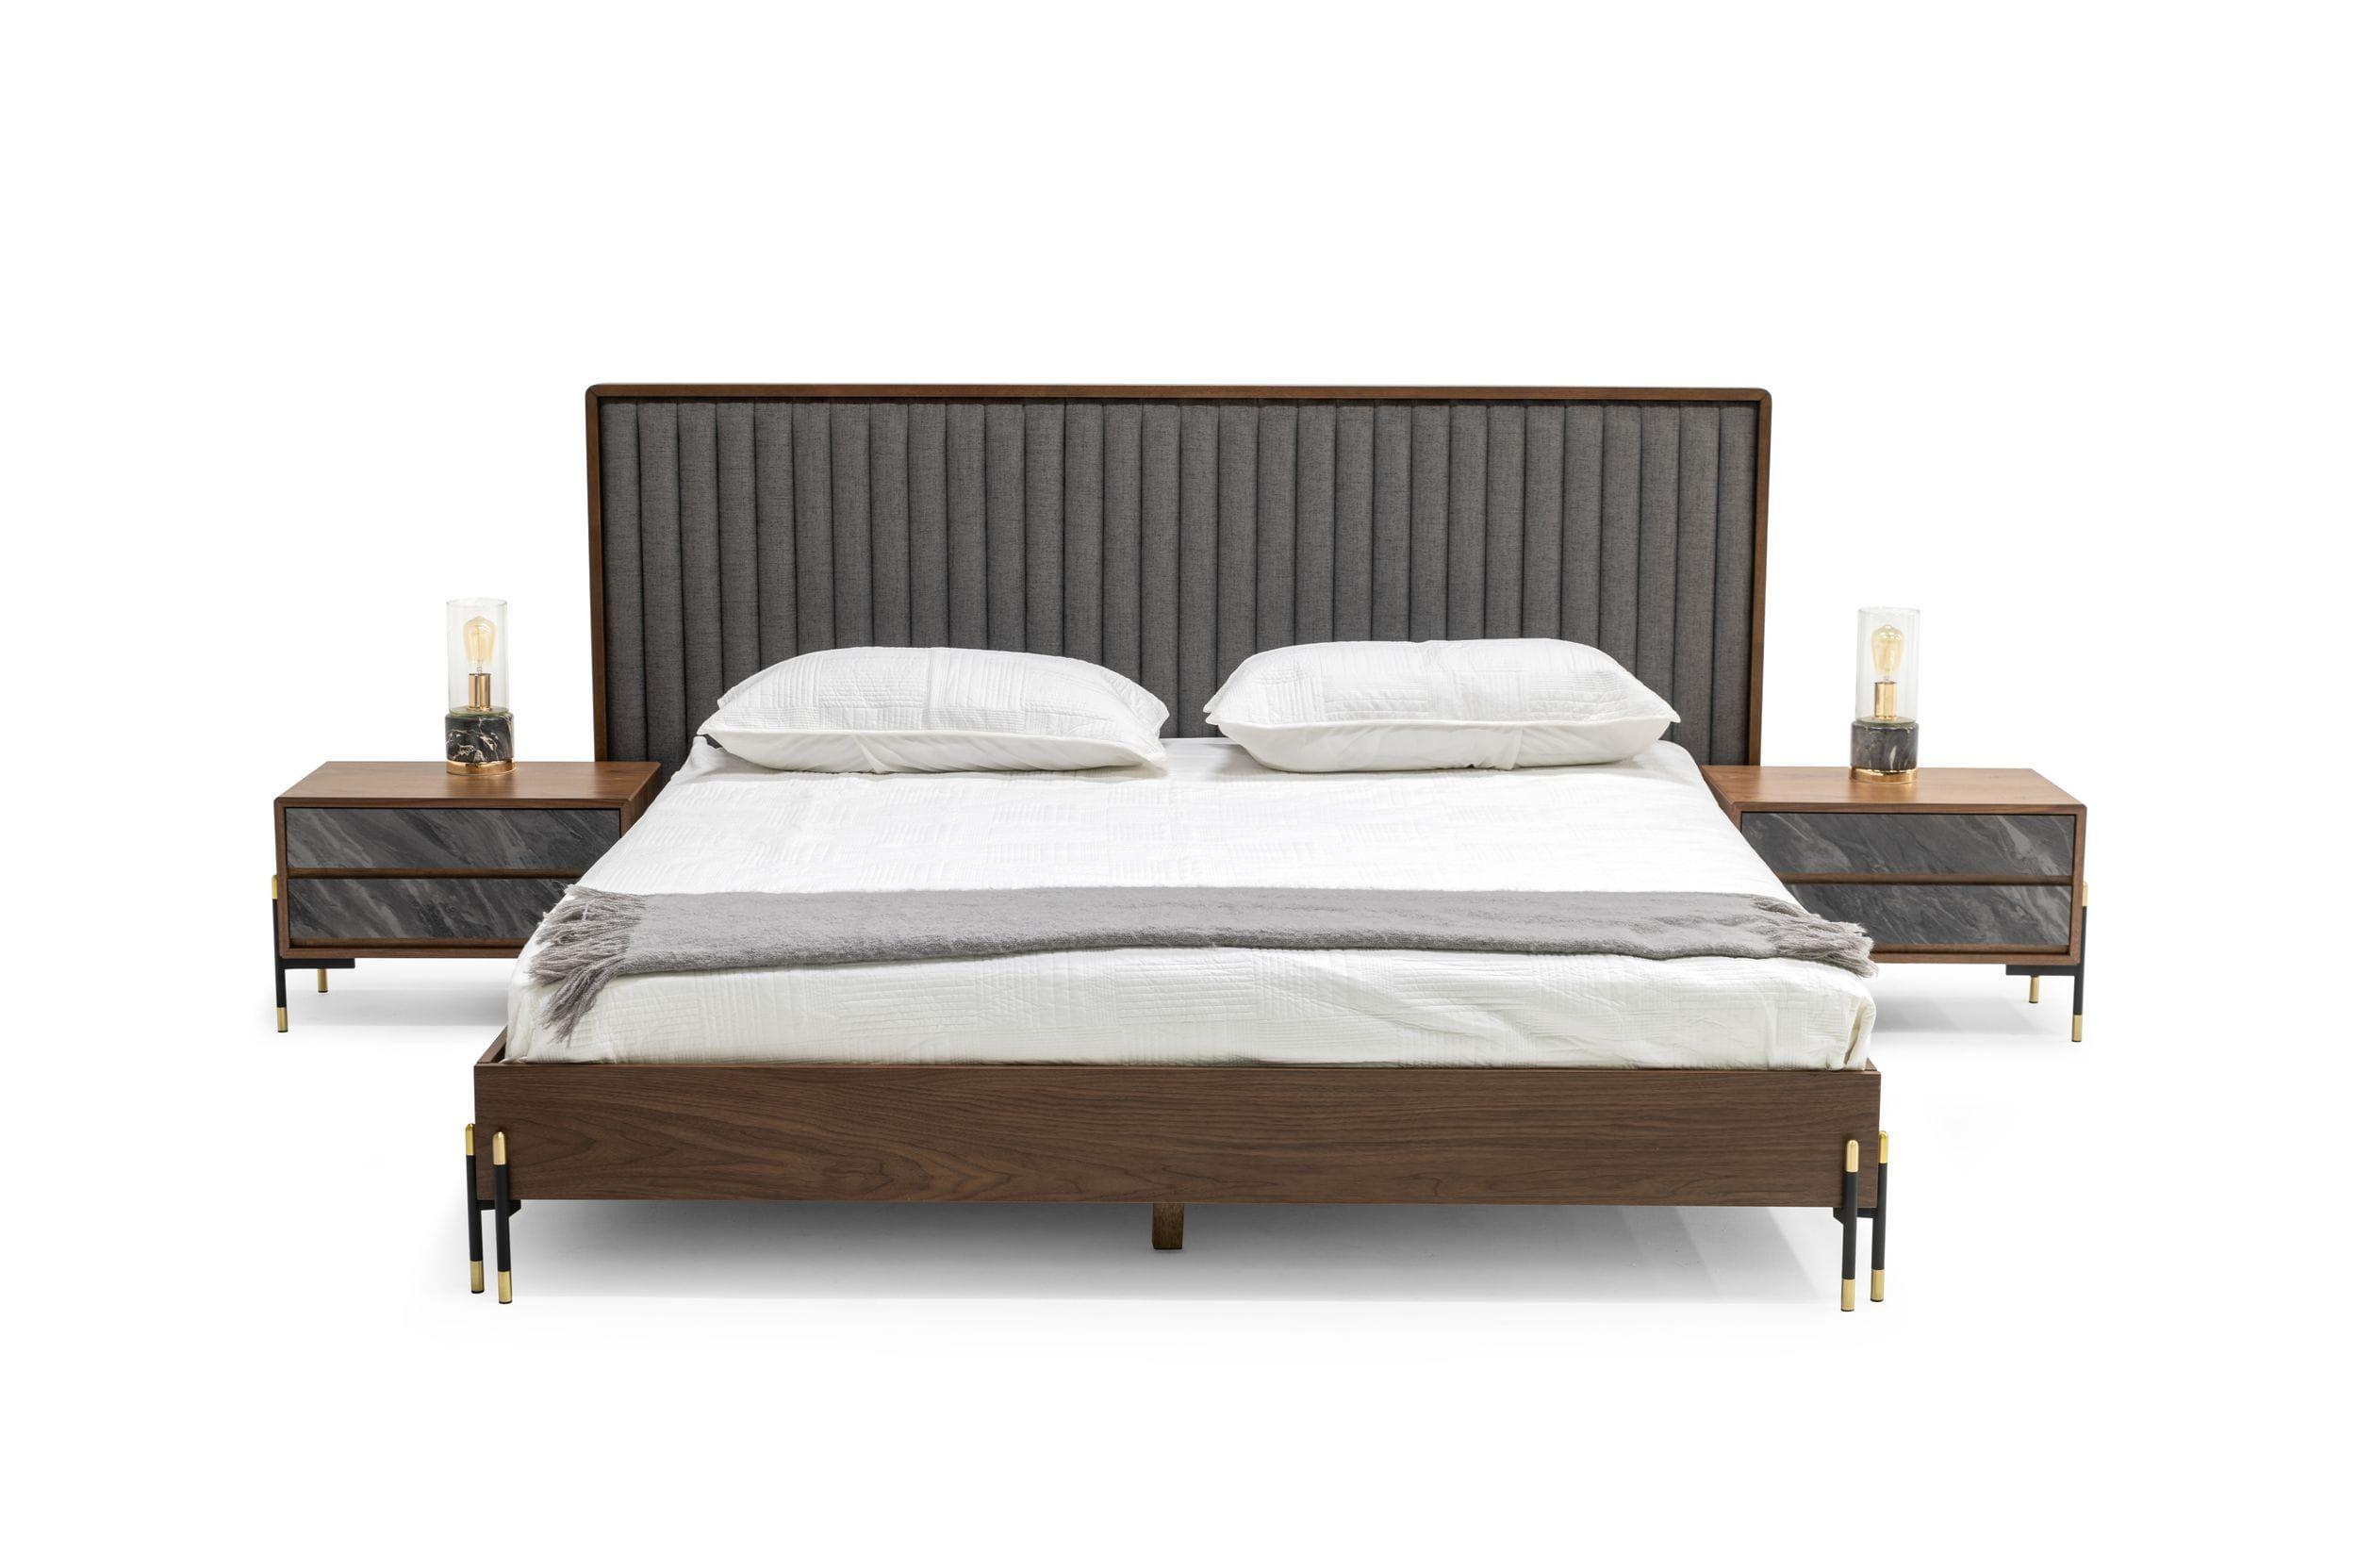 

    
Walnut & Gray Fabric Queen Panel Bedroom Set 6Pcs by VIG Nova Domus Metcalf
